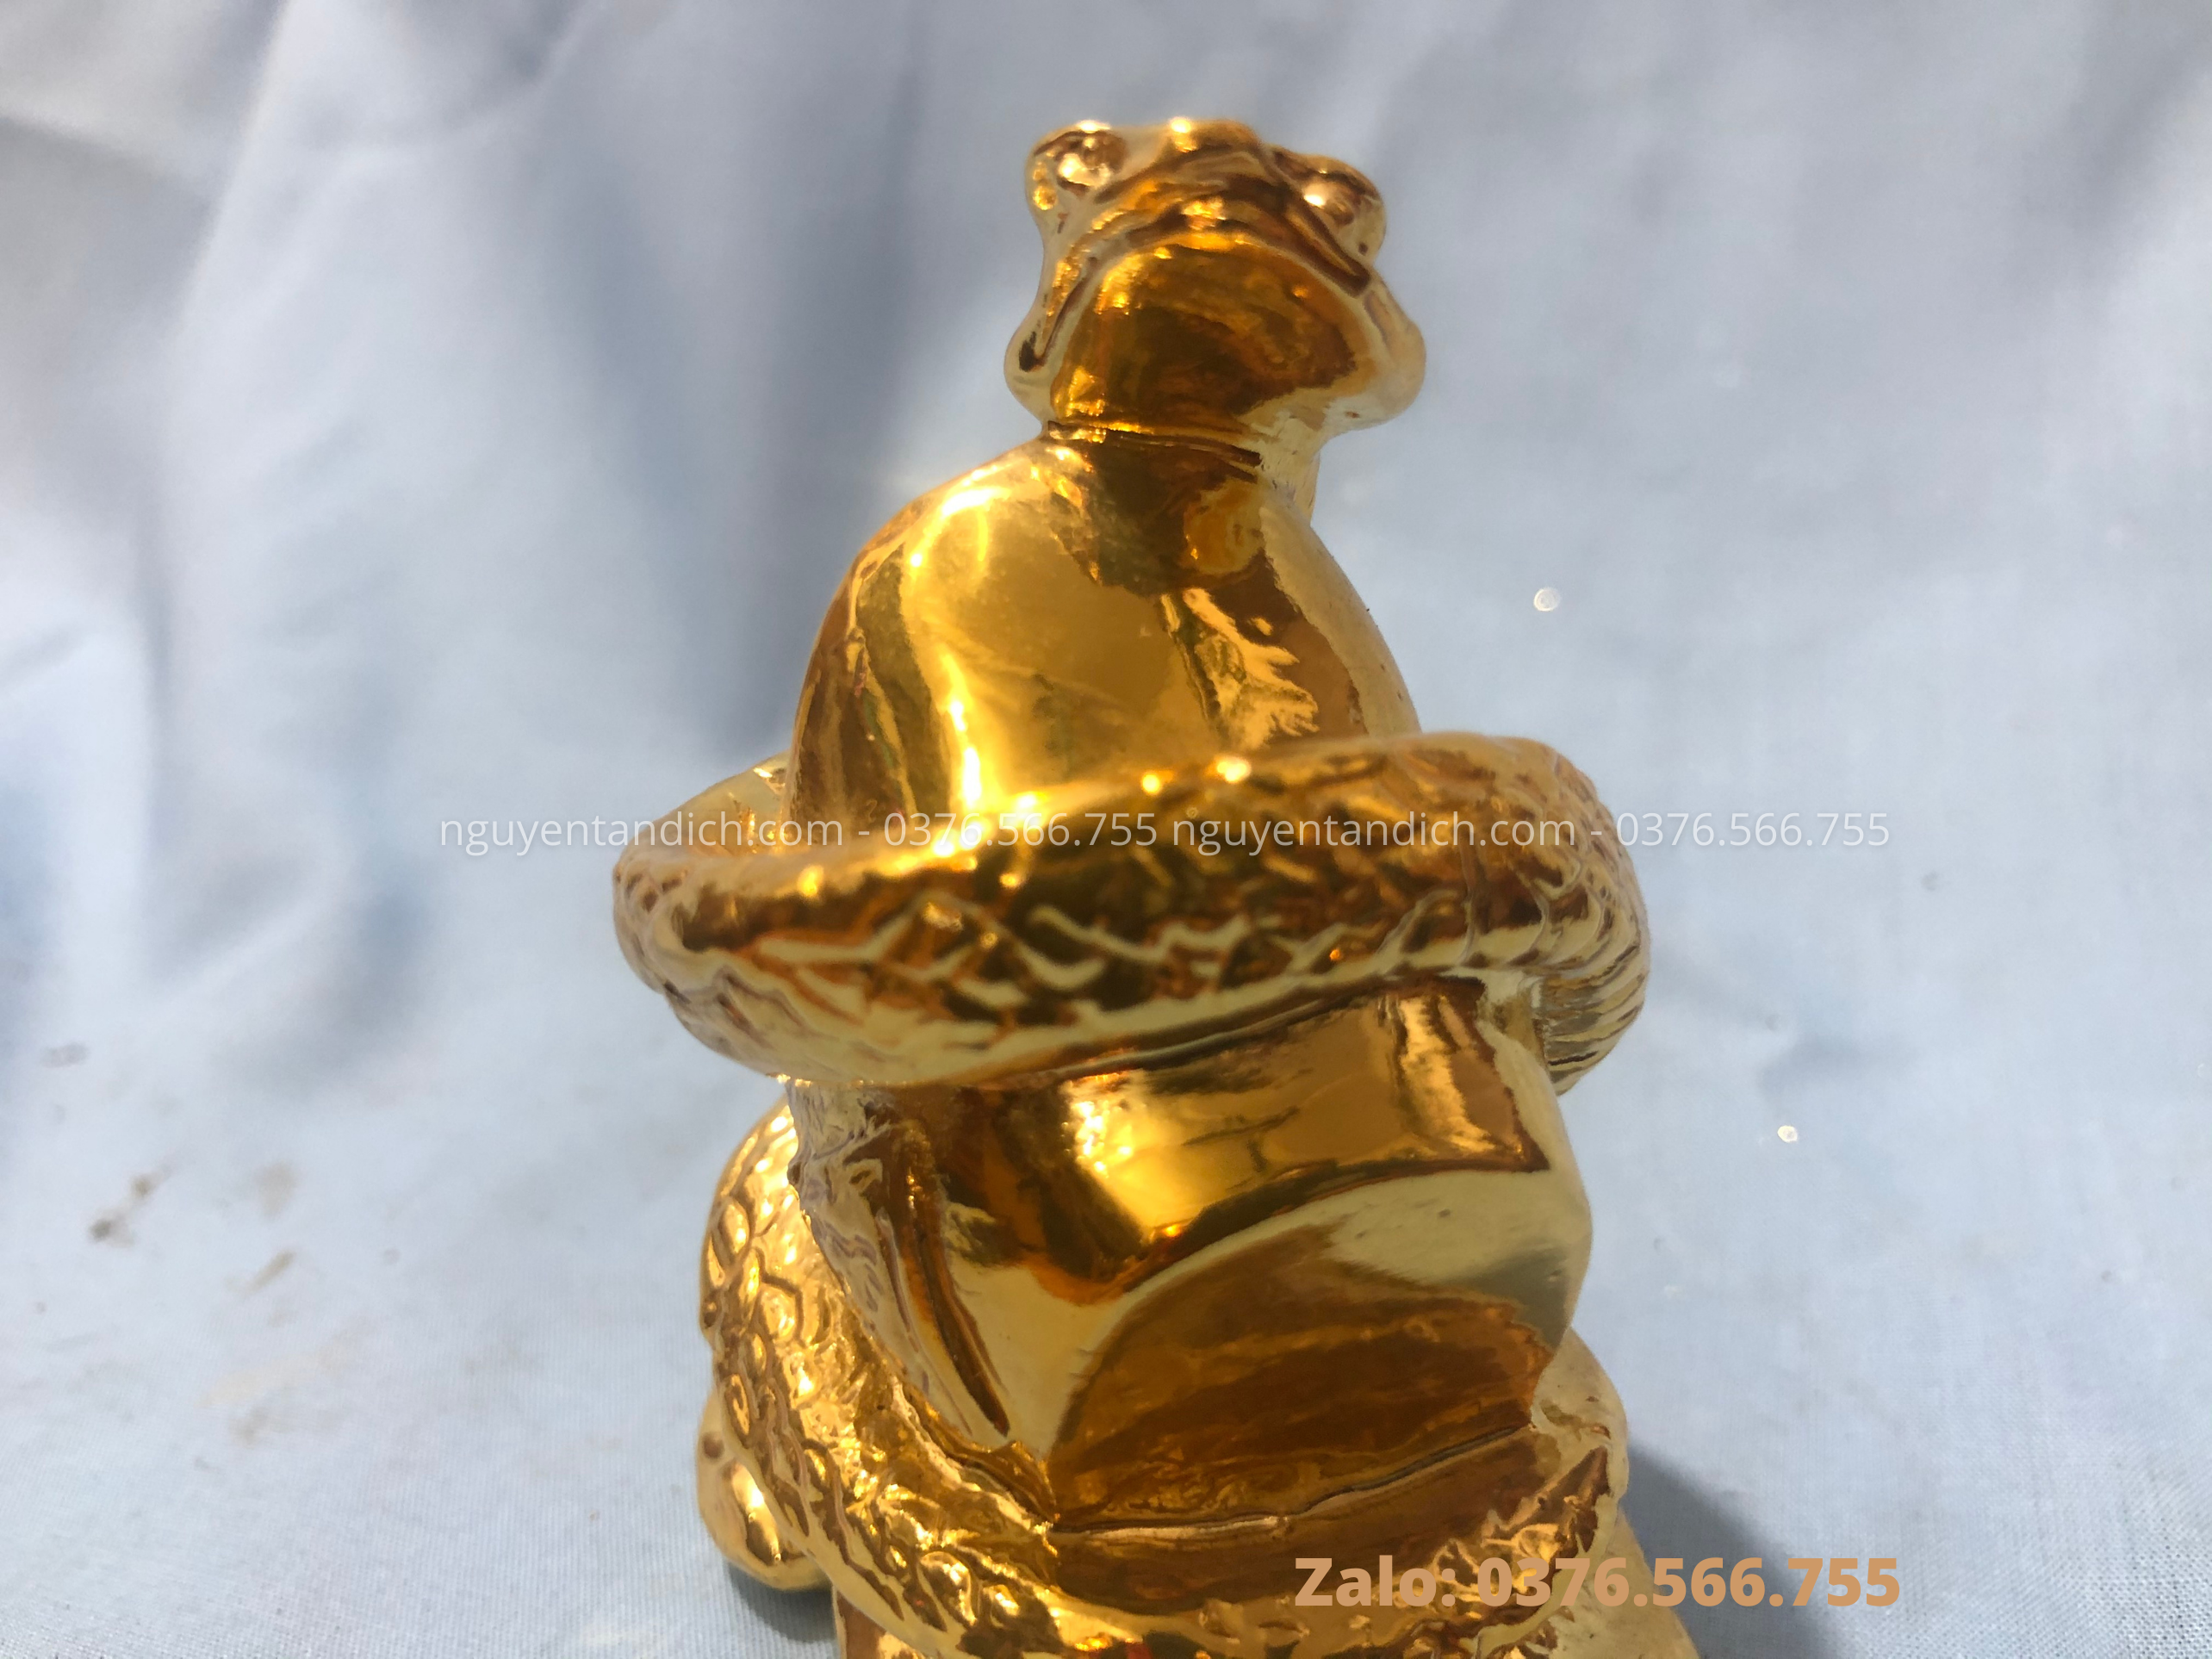 Tượng đồng nghệ thuật: linh vật rắn bằng đồng mạ vàng 